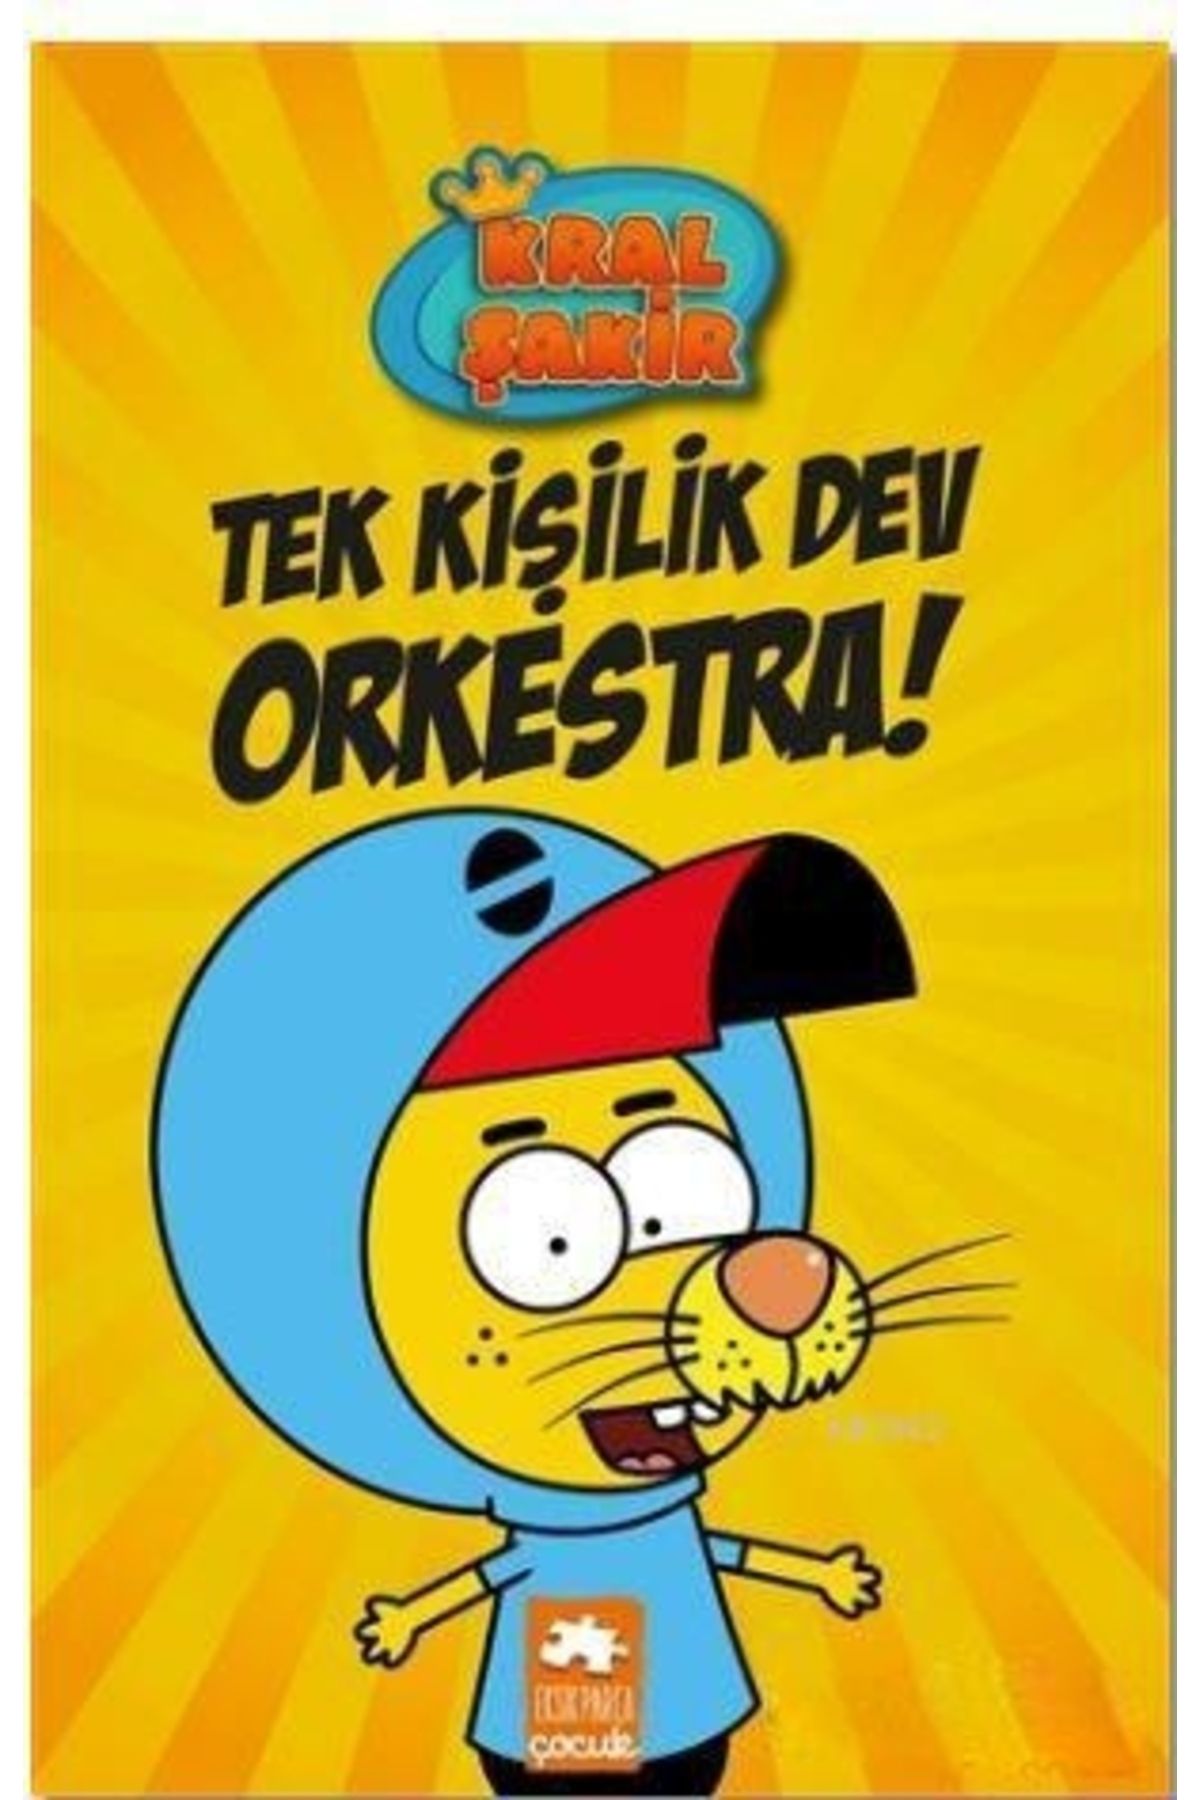 Eksik Parça Yayınları Kral Şakir 1 Tek Kişilik Dev Orkestra